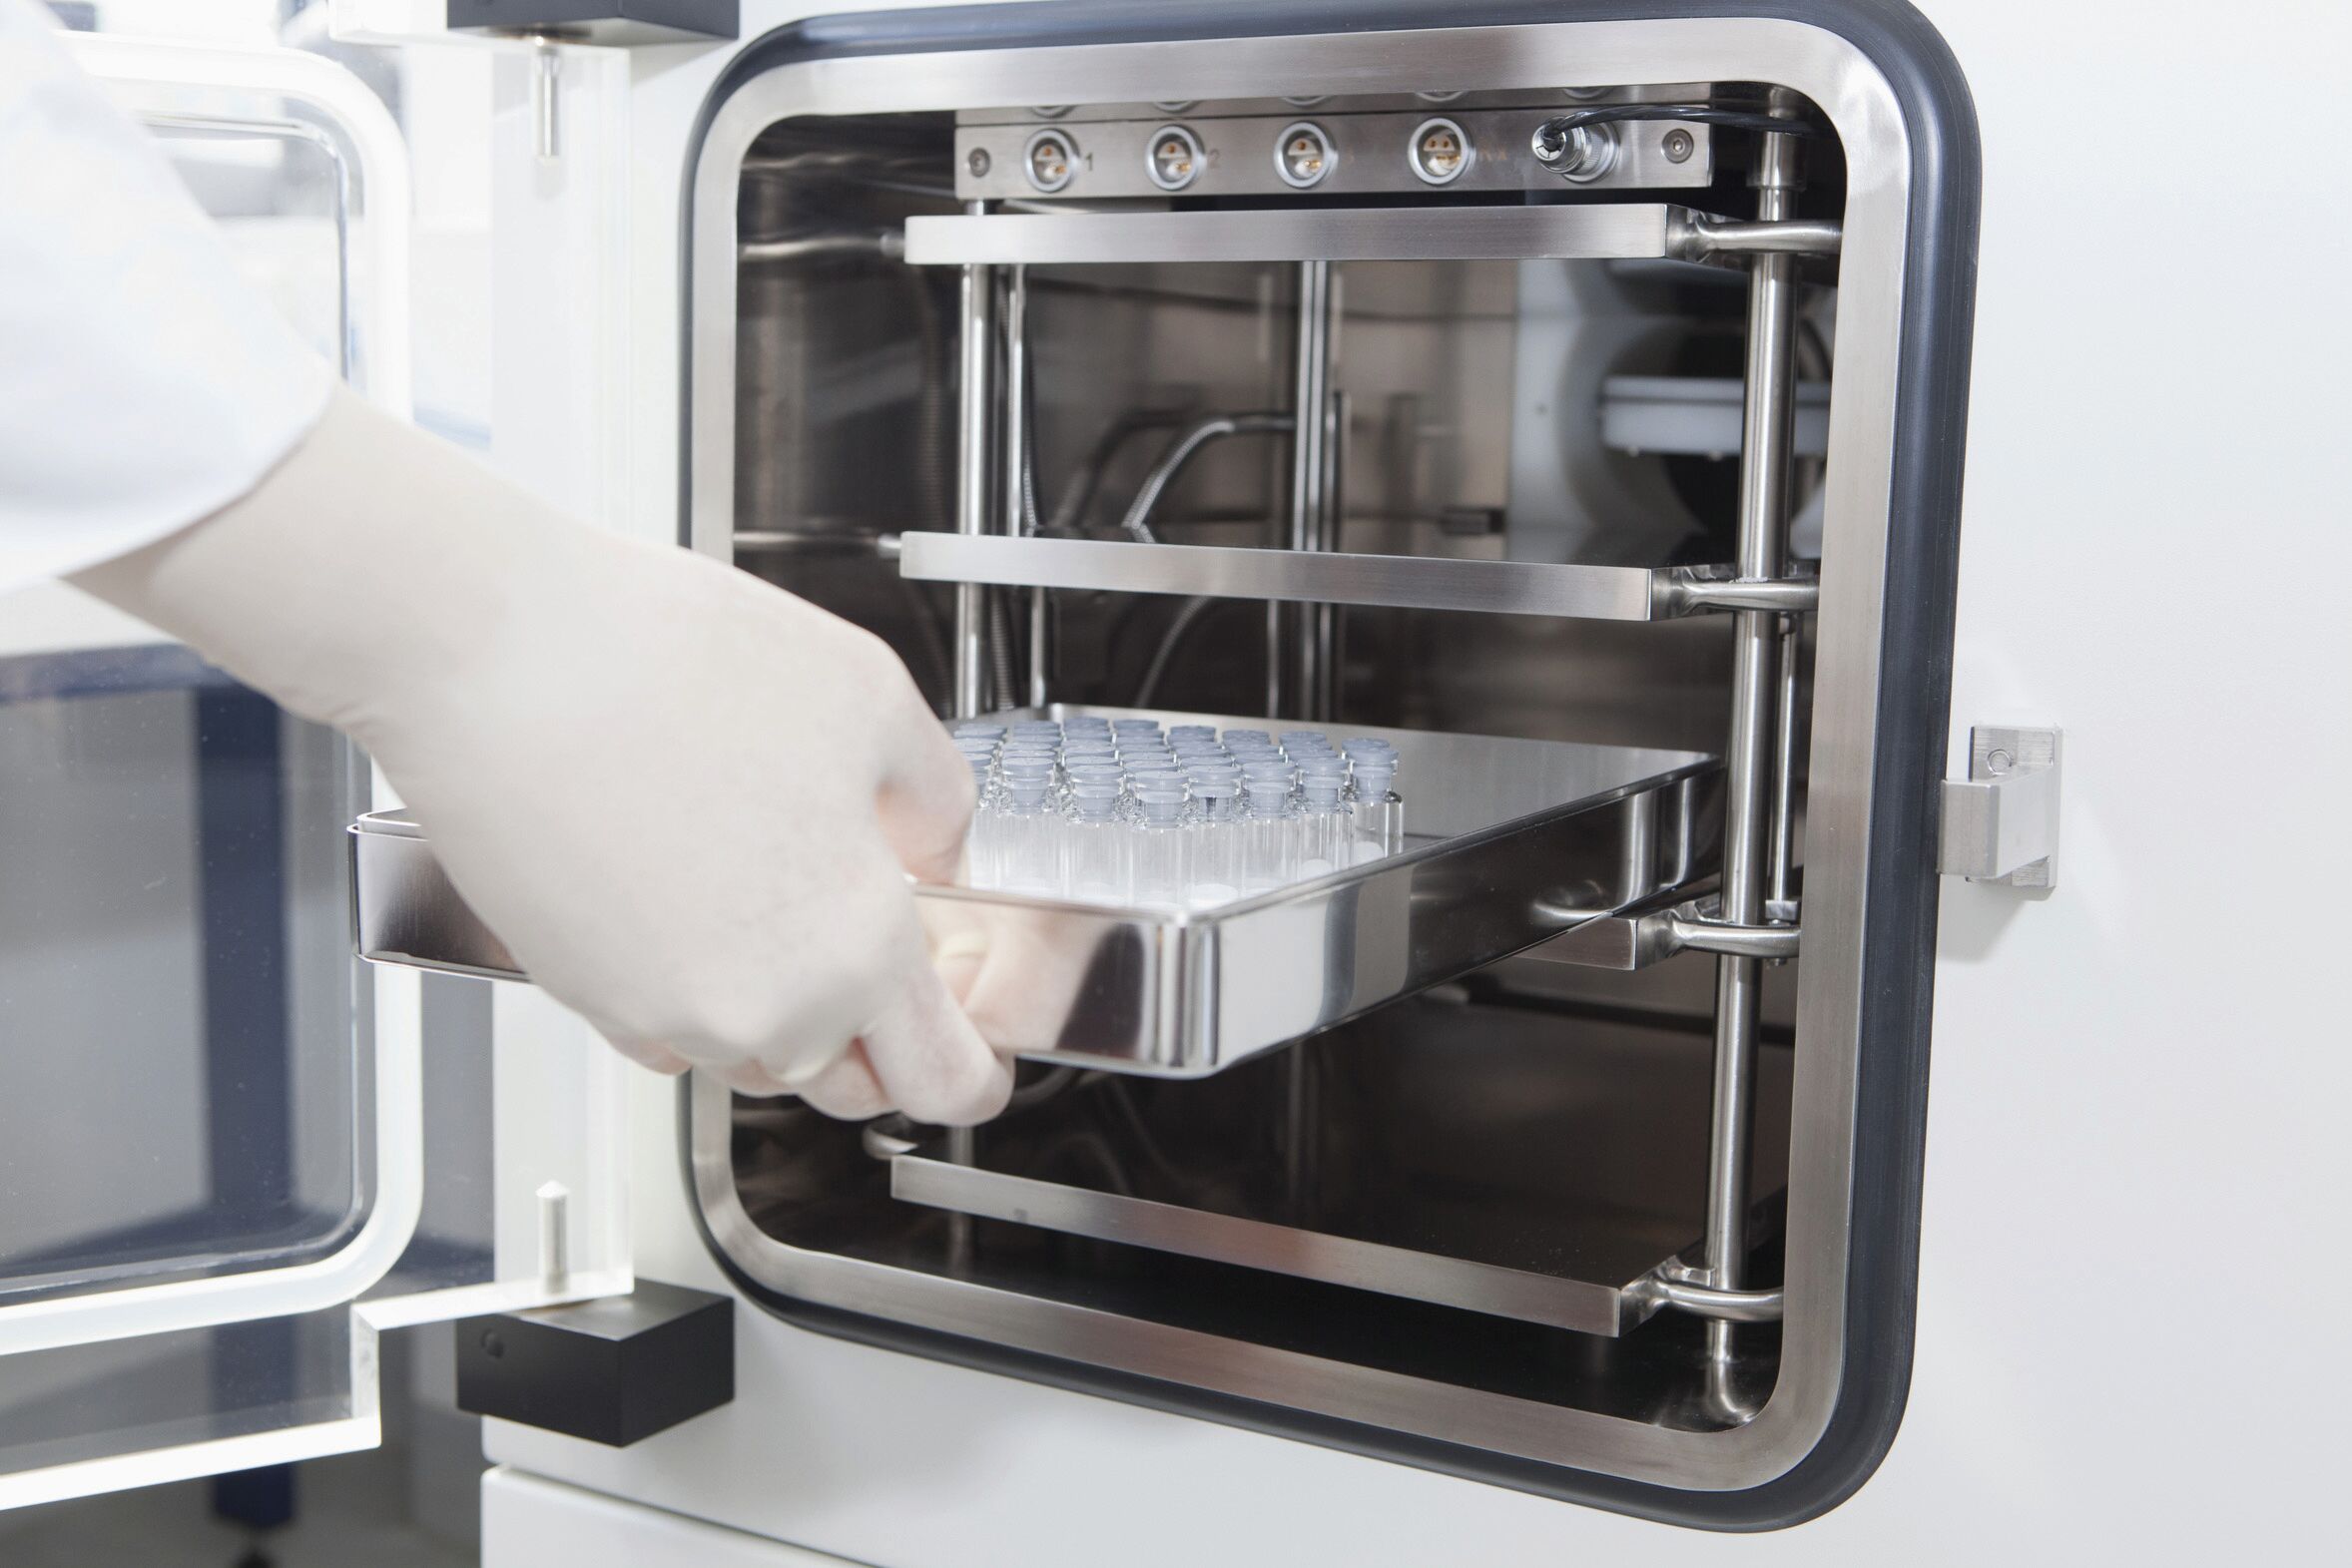 Laboratory Freeze Dryers / Lyophilisation